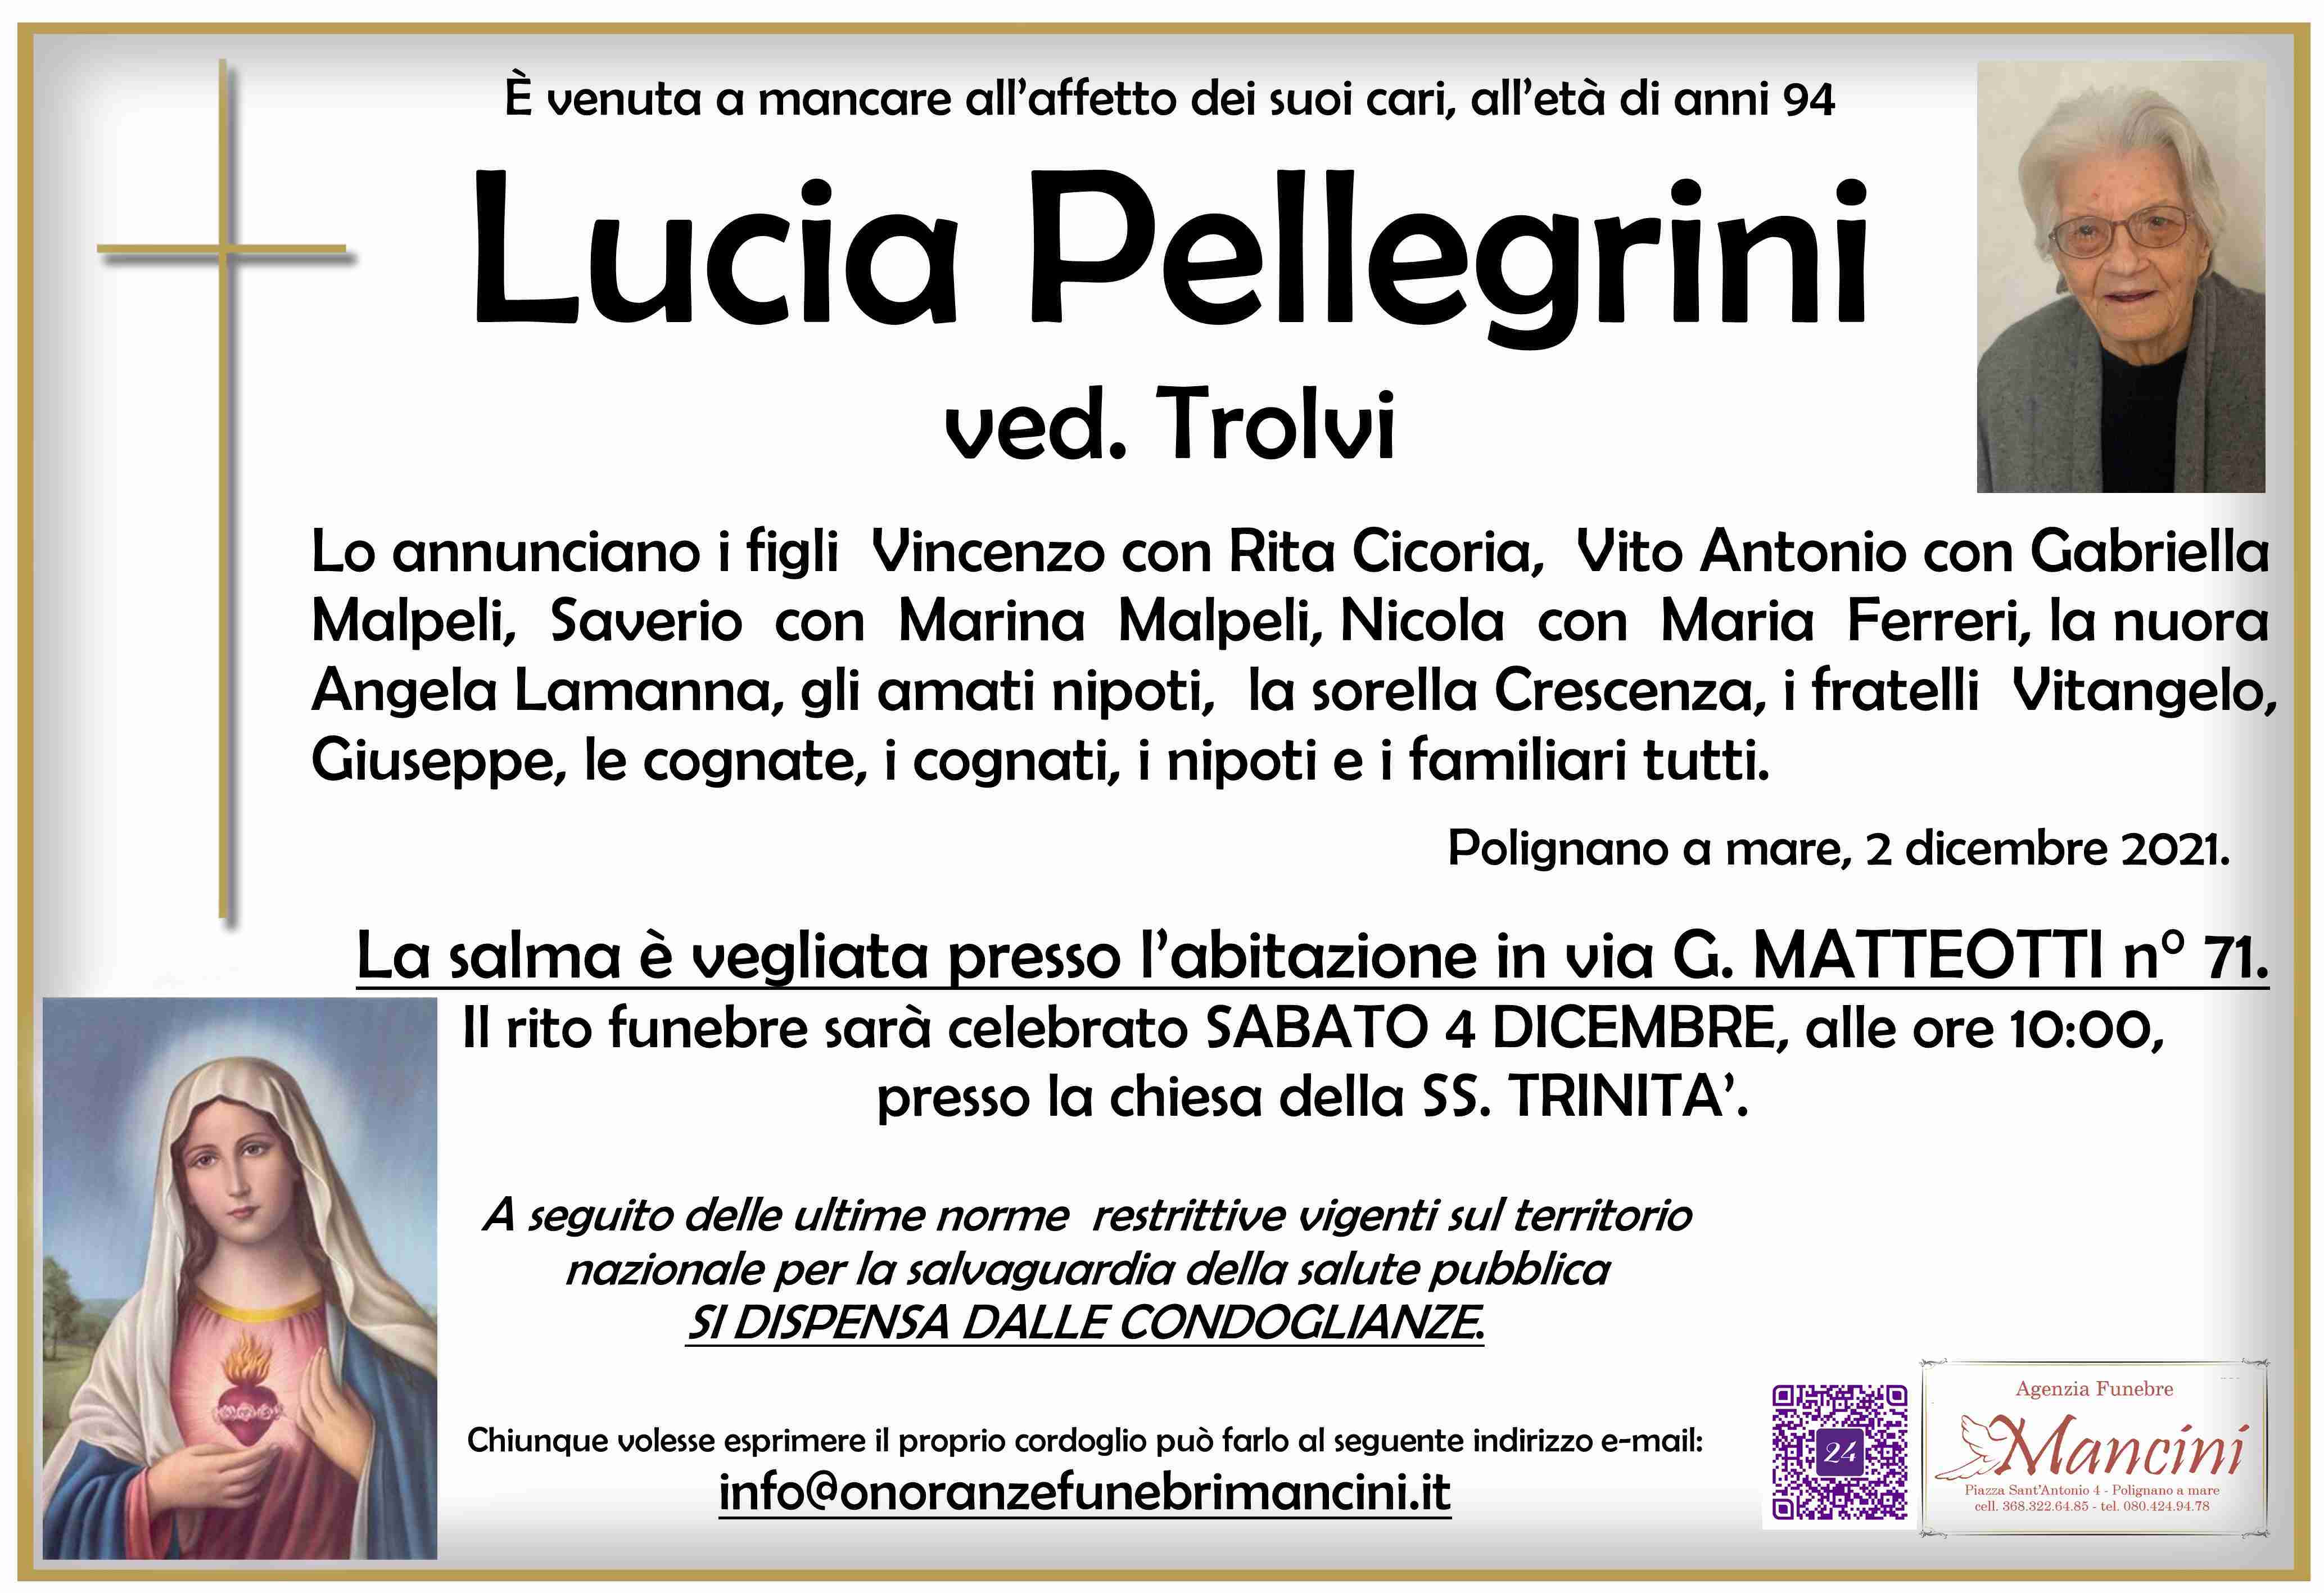 Lucia Pellegrini